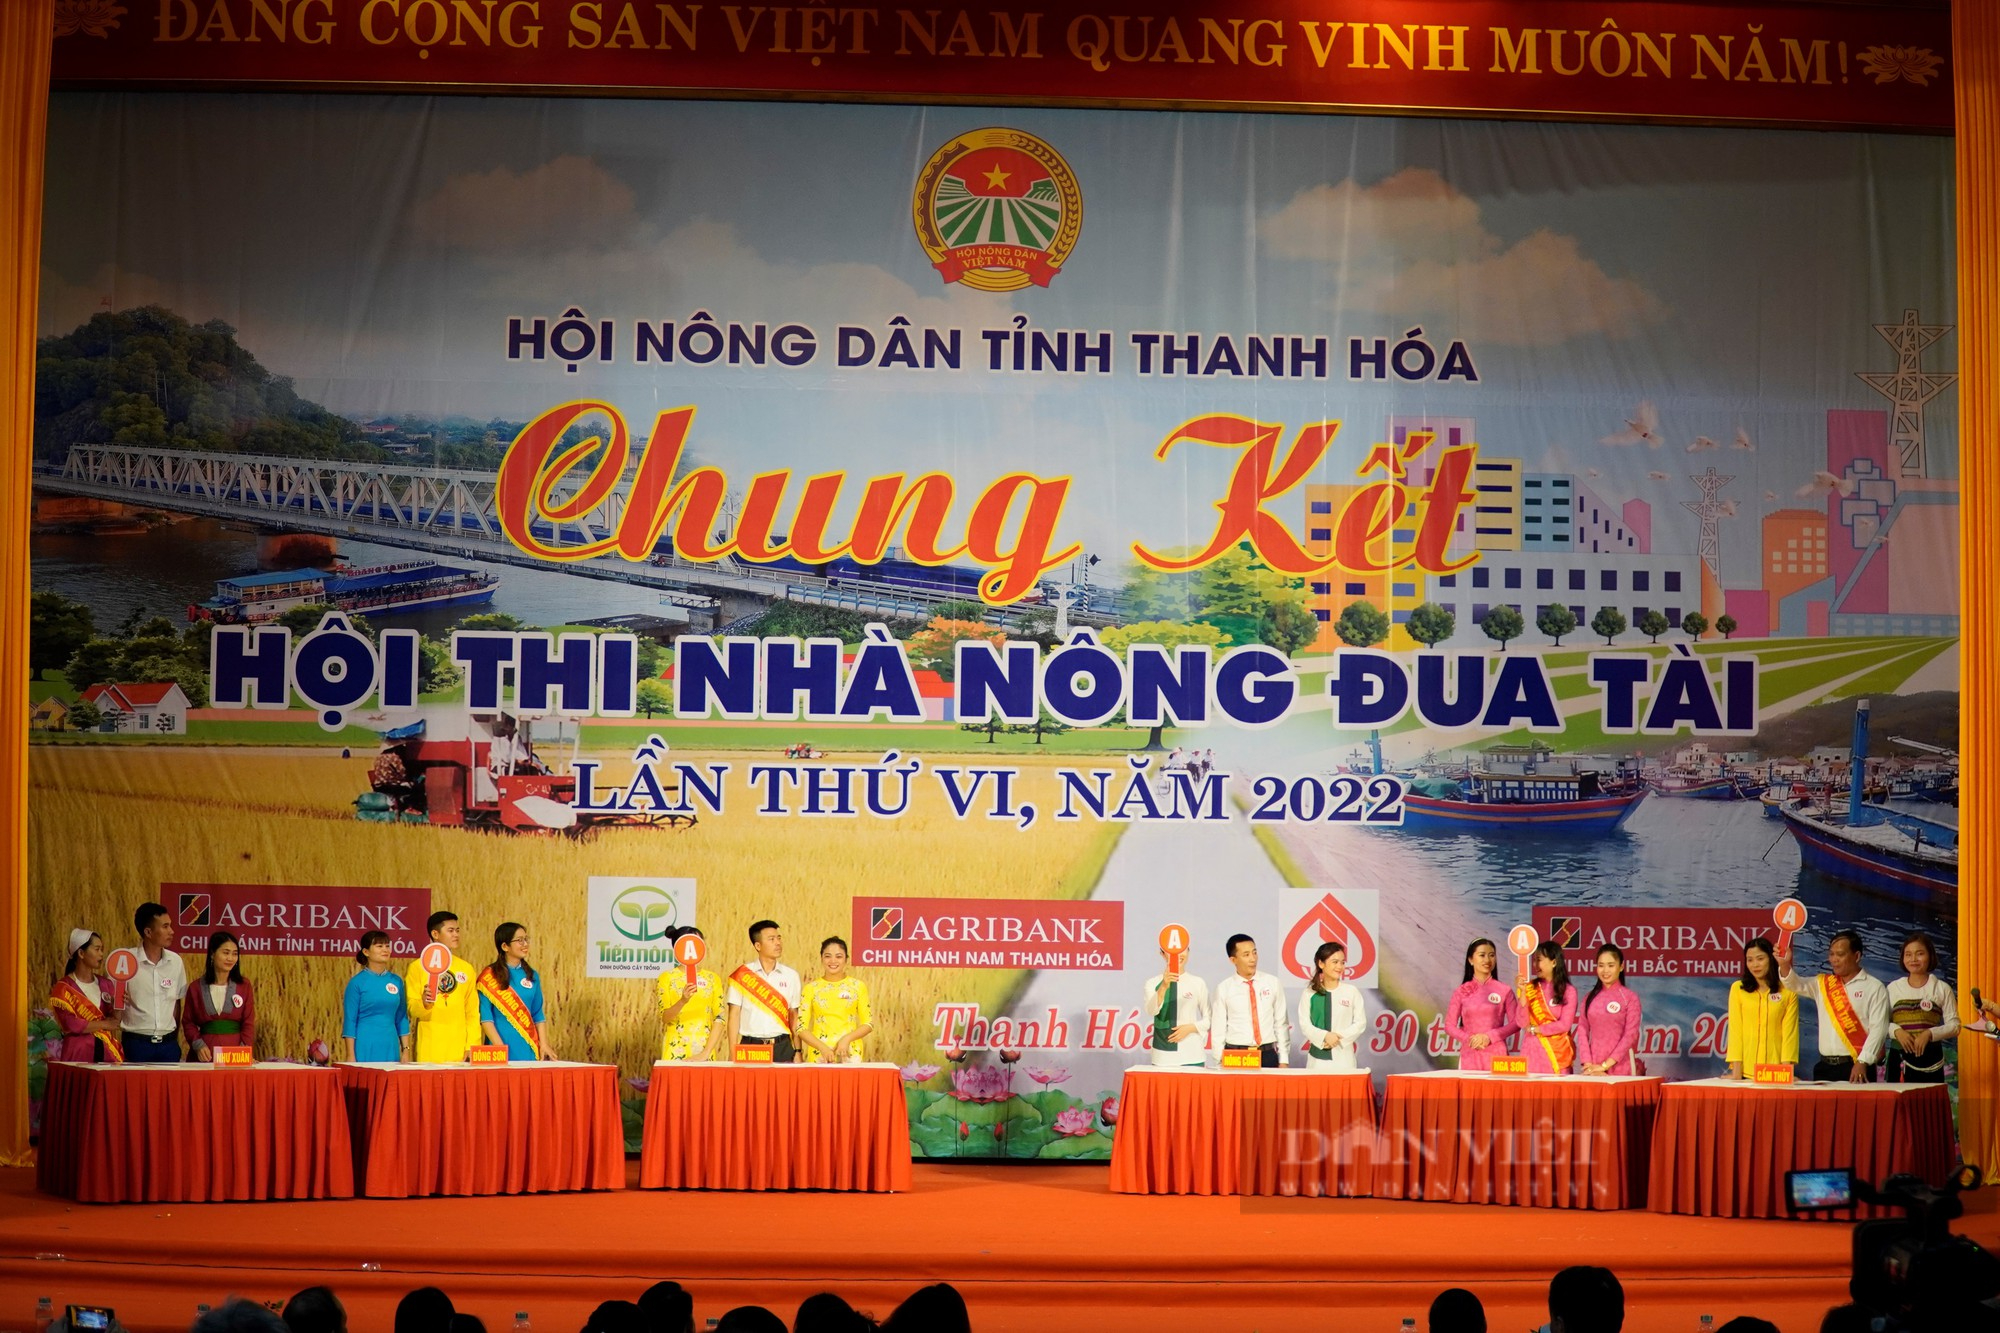 Chung kết Hội thi Nhà nông đua tài tỉnh Thanh Hóa năm 2022, Hội Nông dân huyện Đông Sơn đạt giải Nhất - Ảnh 7.